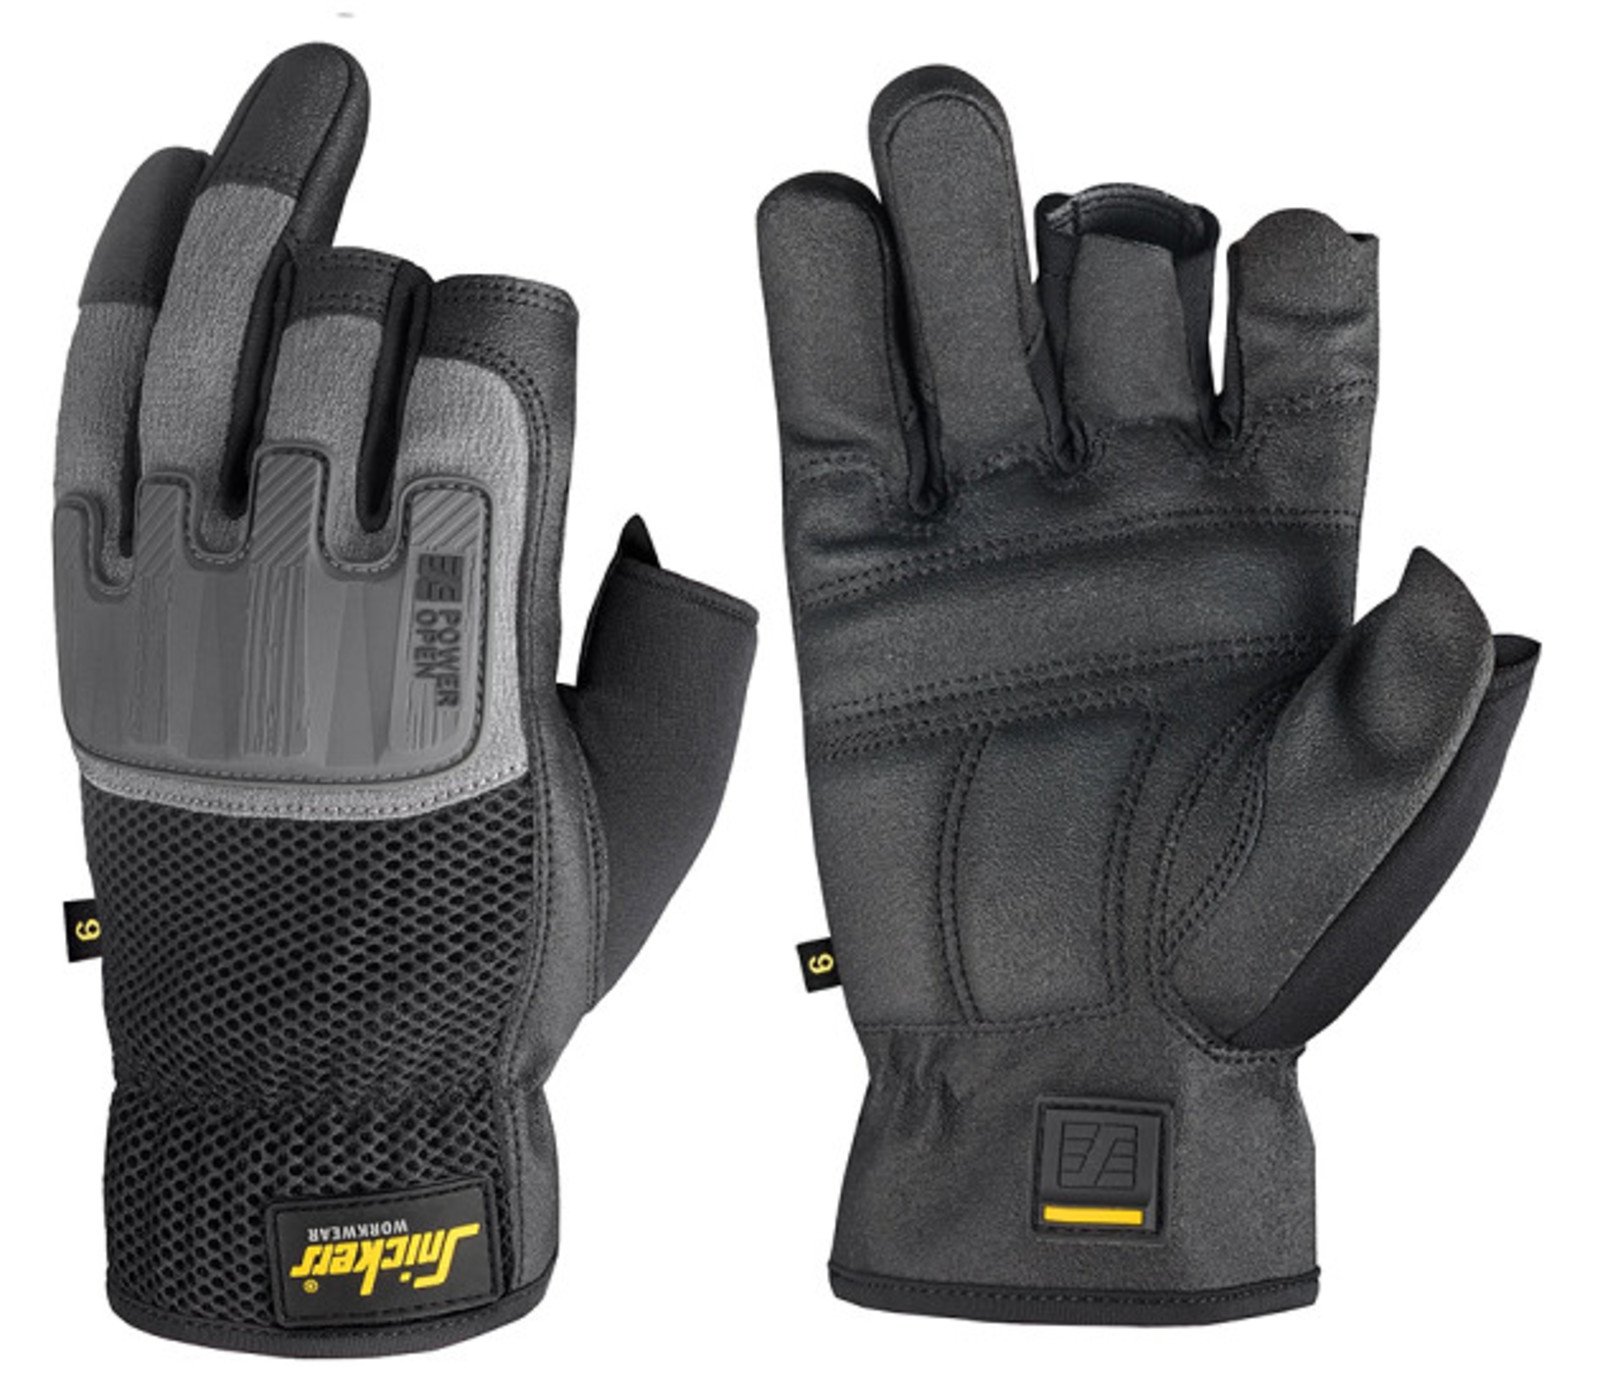 Ochranné rukavice Snickers® Power Open bez prstov - veľkosť: 9/L, farba: sivá/čierna